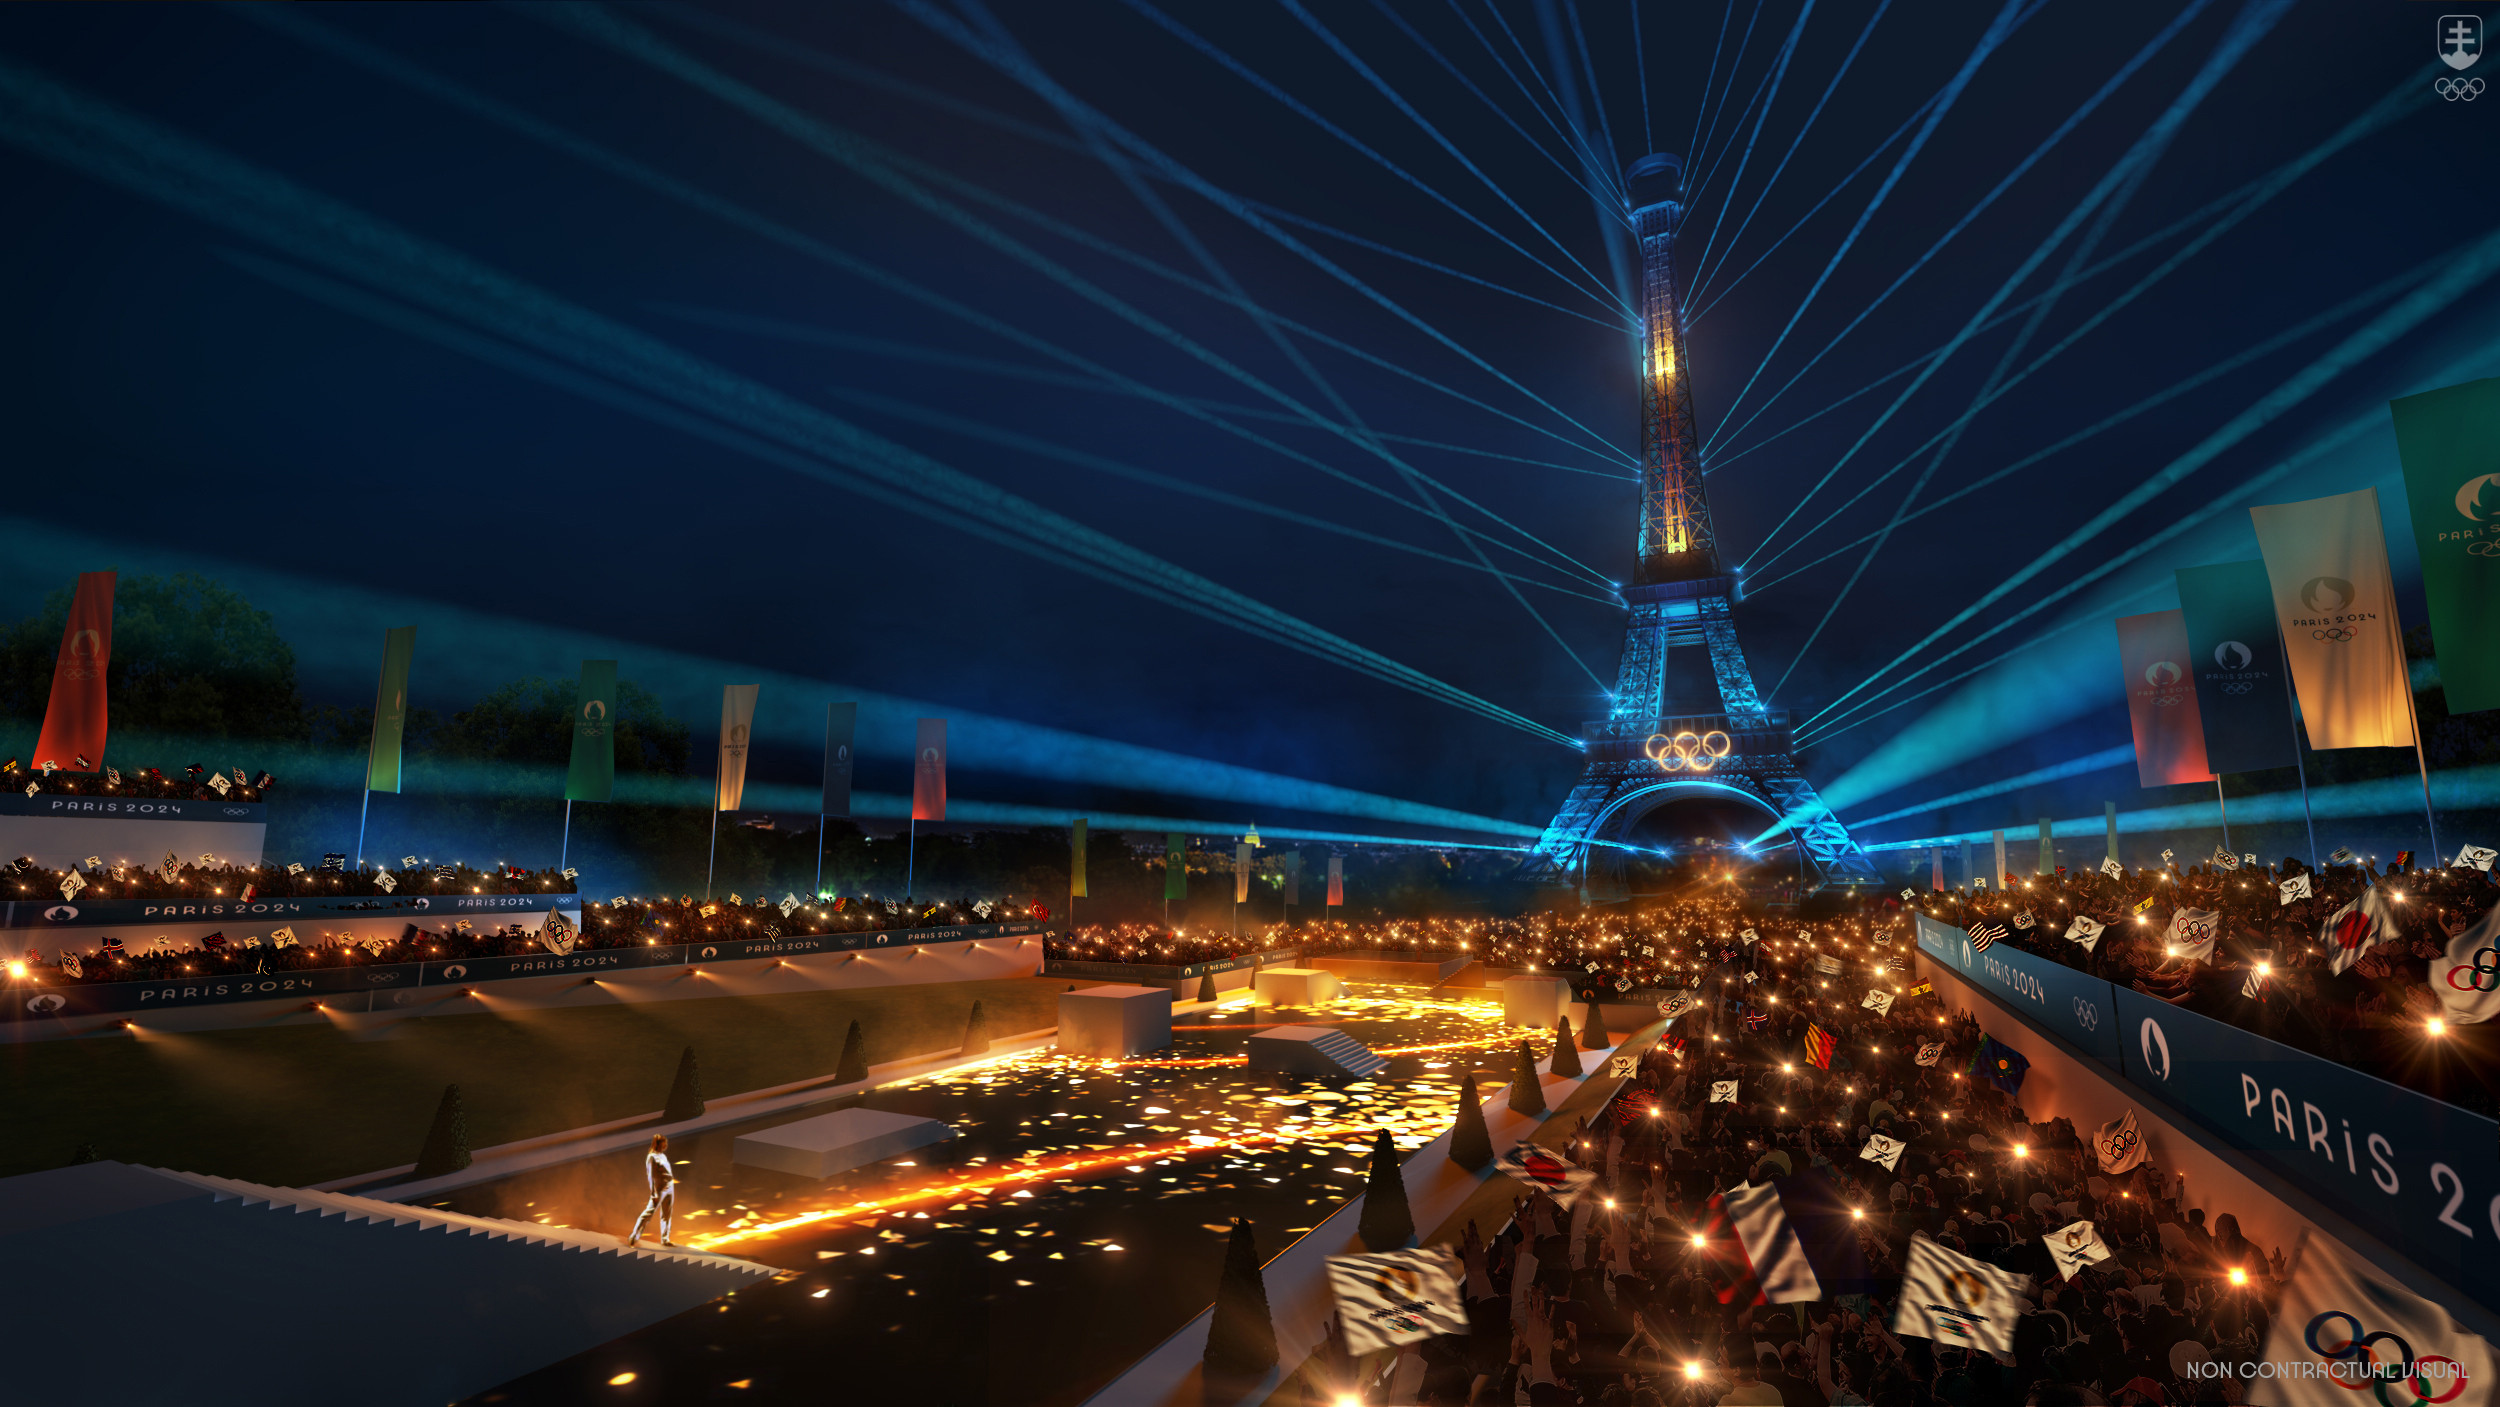 Takto by podľa organizátorov hier mala vyzerať scenéria vyvrcholenia otváracieho ceremoniálu OH 2024 v záhradách Trocadéra oproti Eiffelovej veži.